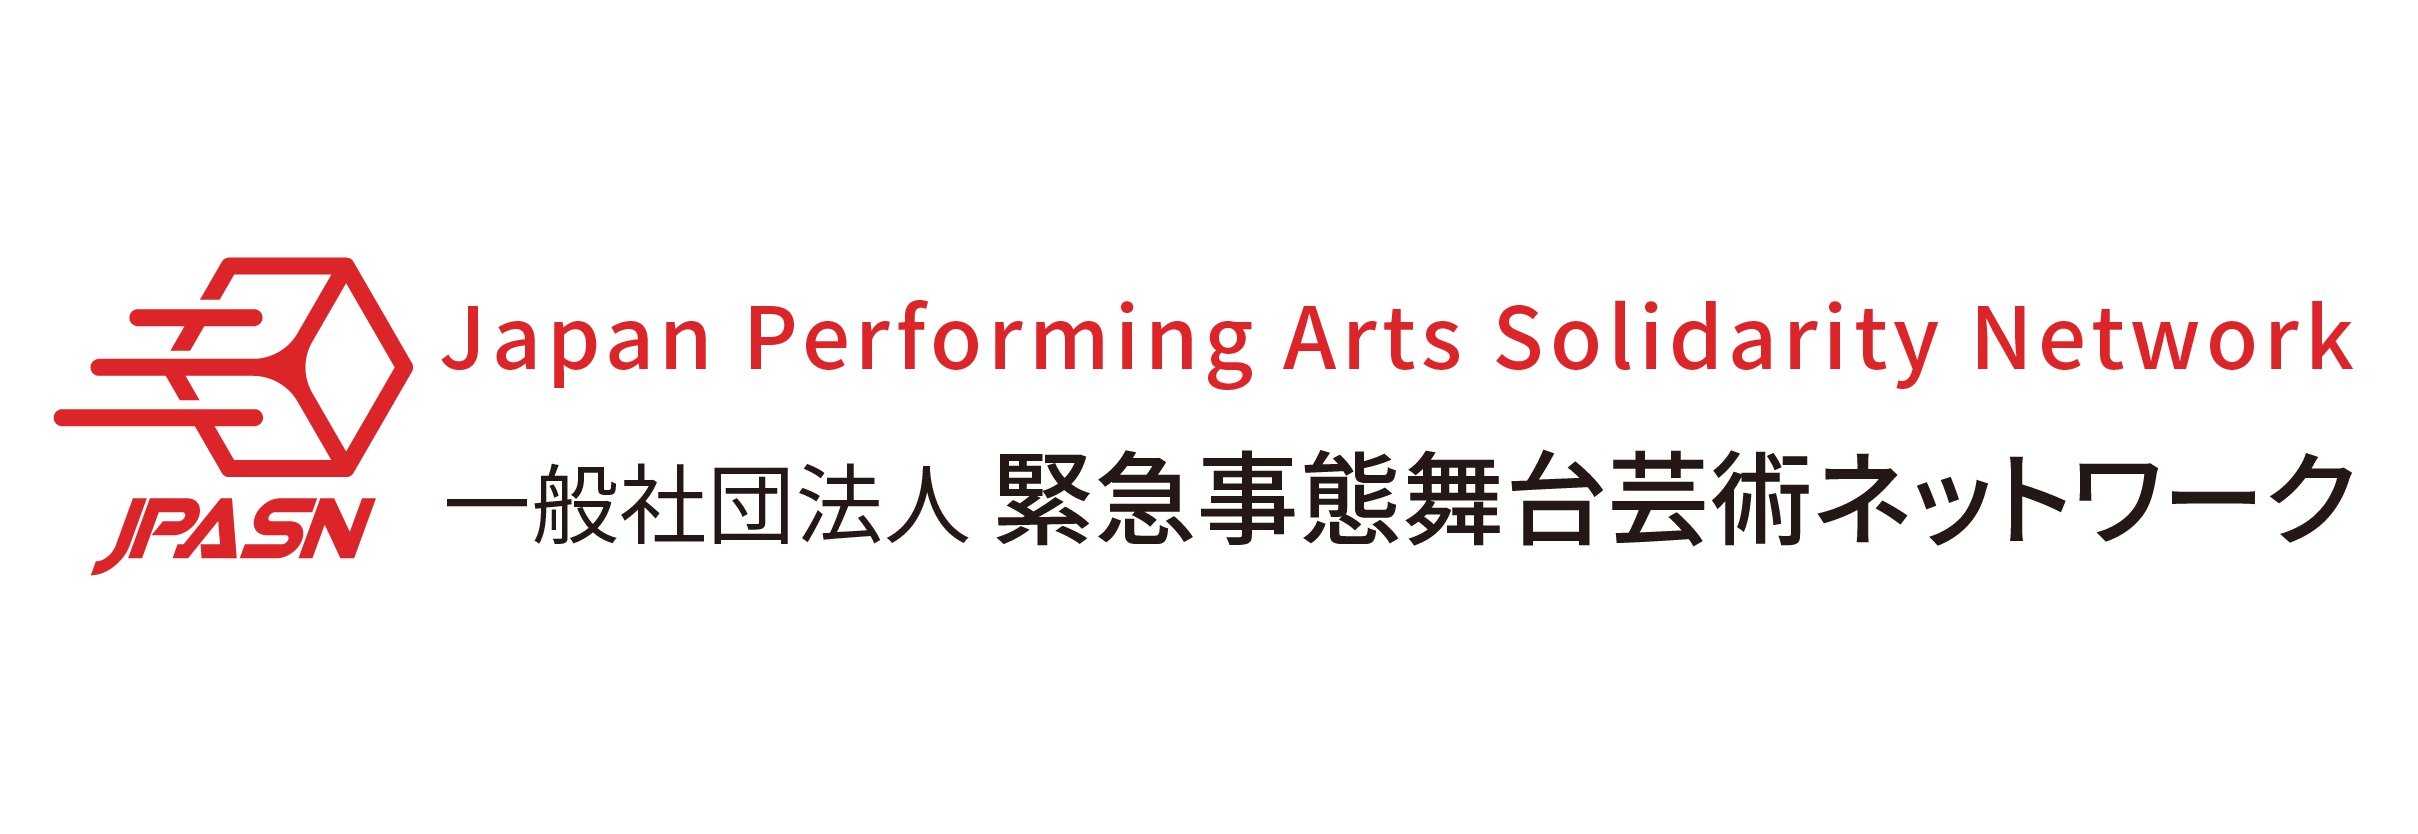 Japan Performing Arts Solidarity Network